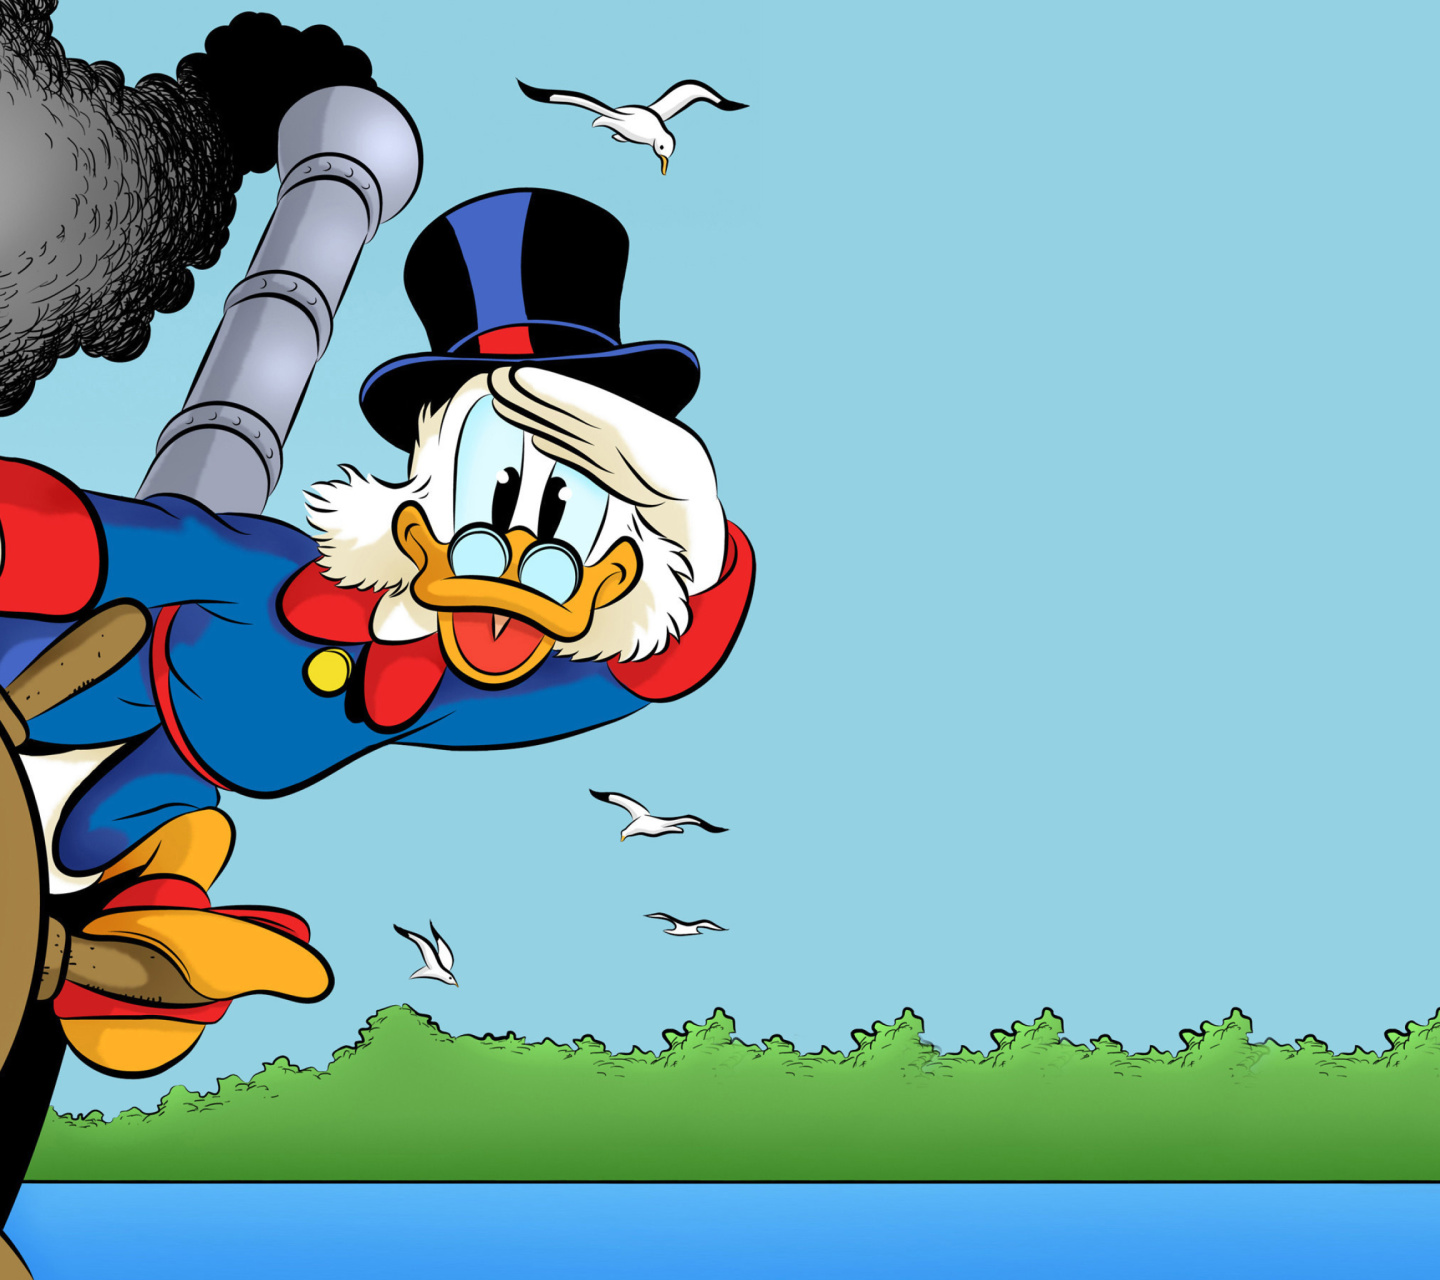 Scrooge McDuck from Ducktales screenshot #1 1440x1280